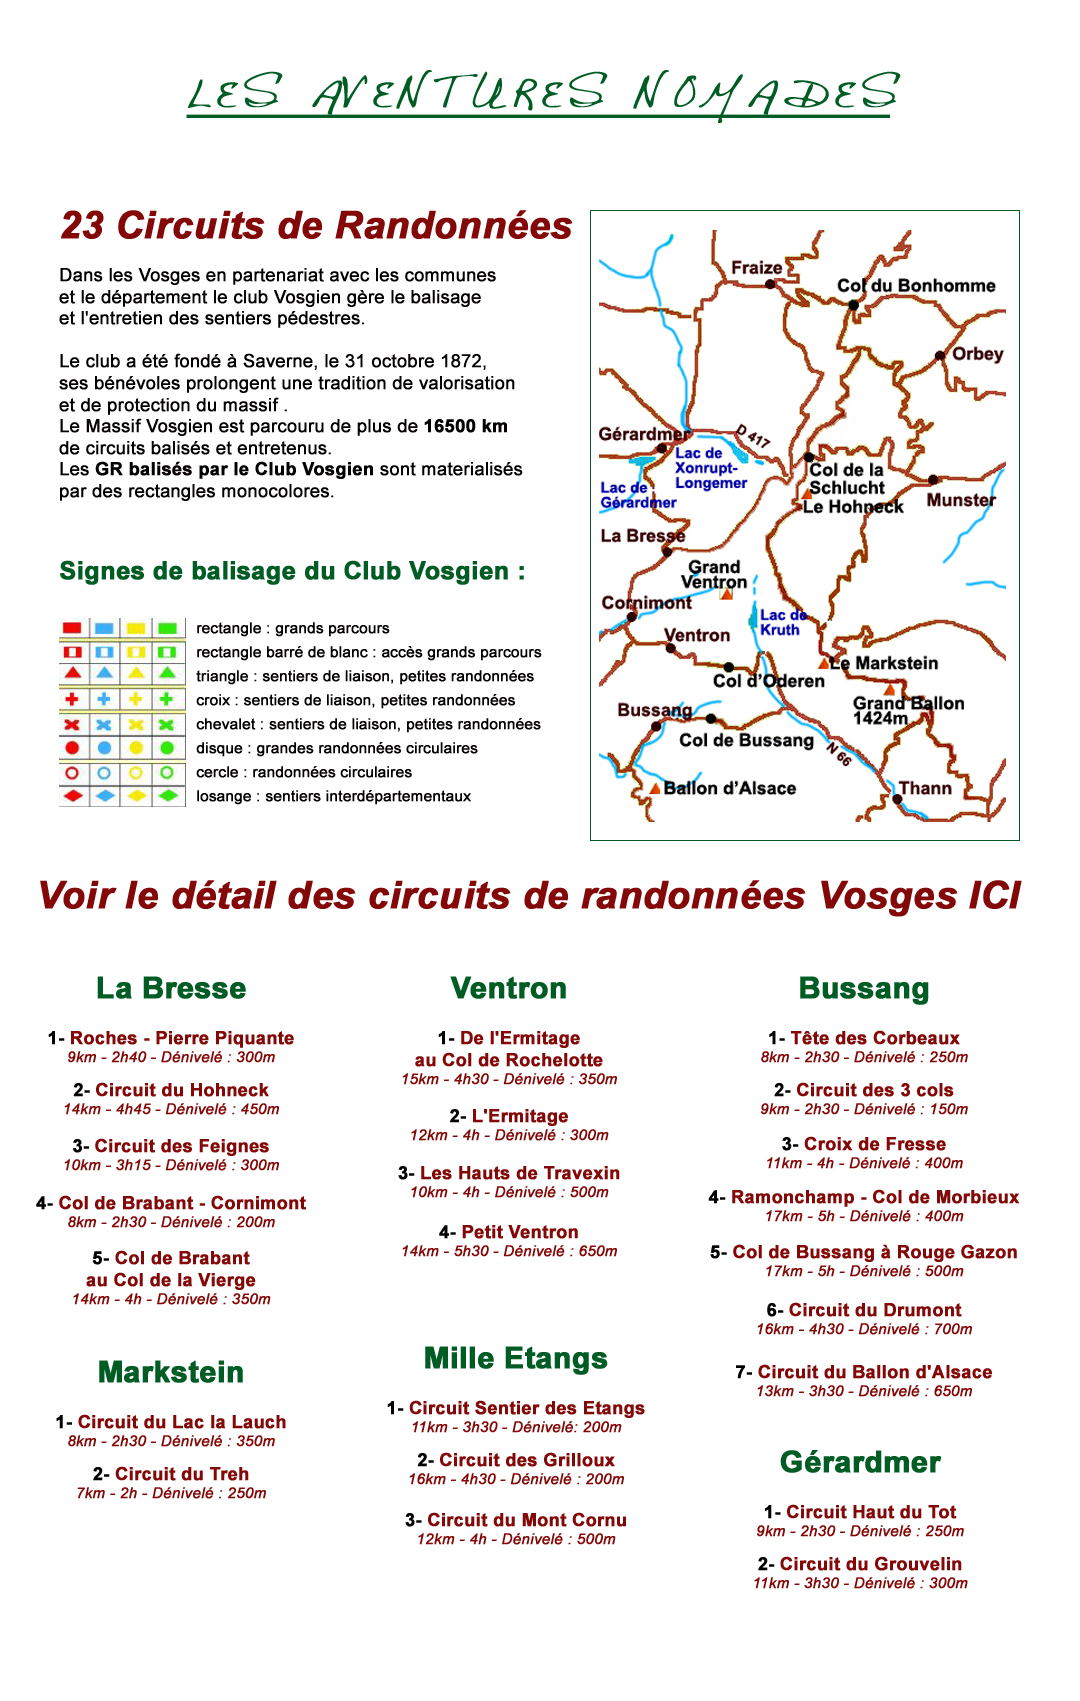 Voir les circuits de randonnées dans les Vosges